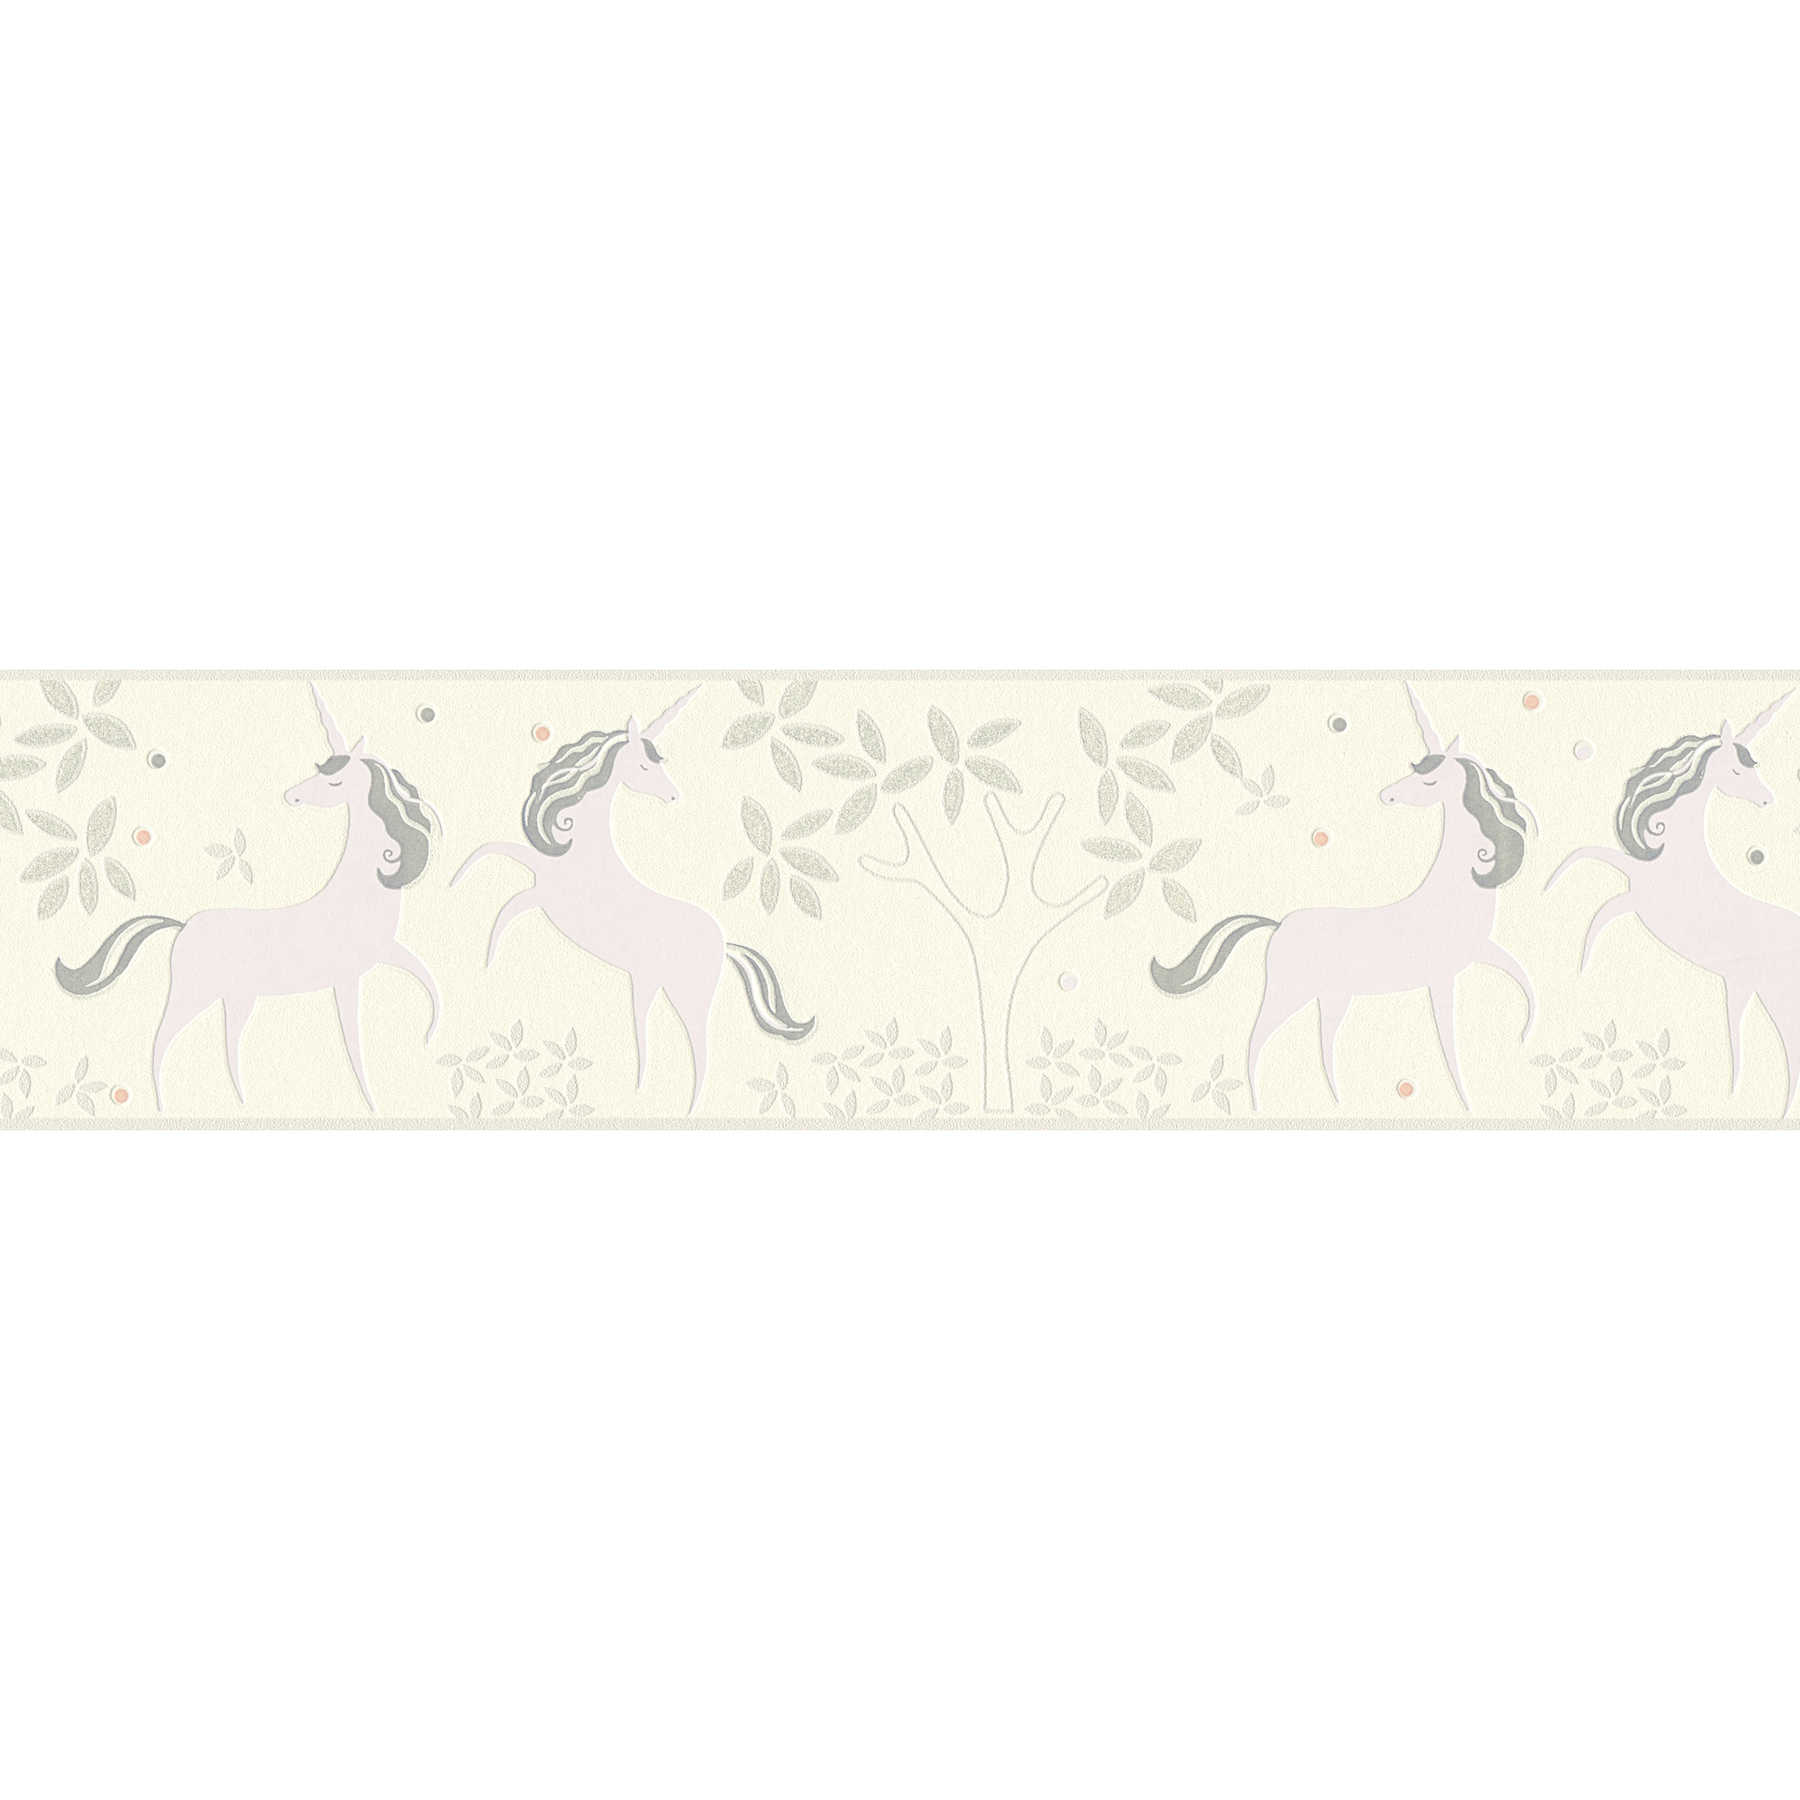 Bordure de chambre d'enfant avec licornes & paillettes - Gris, Violet
